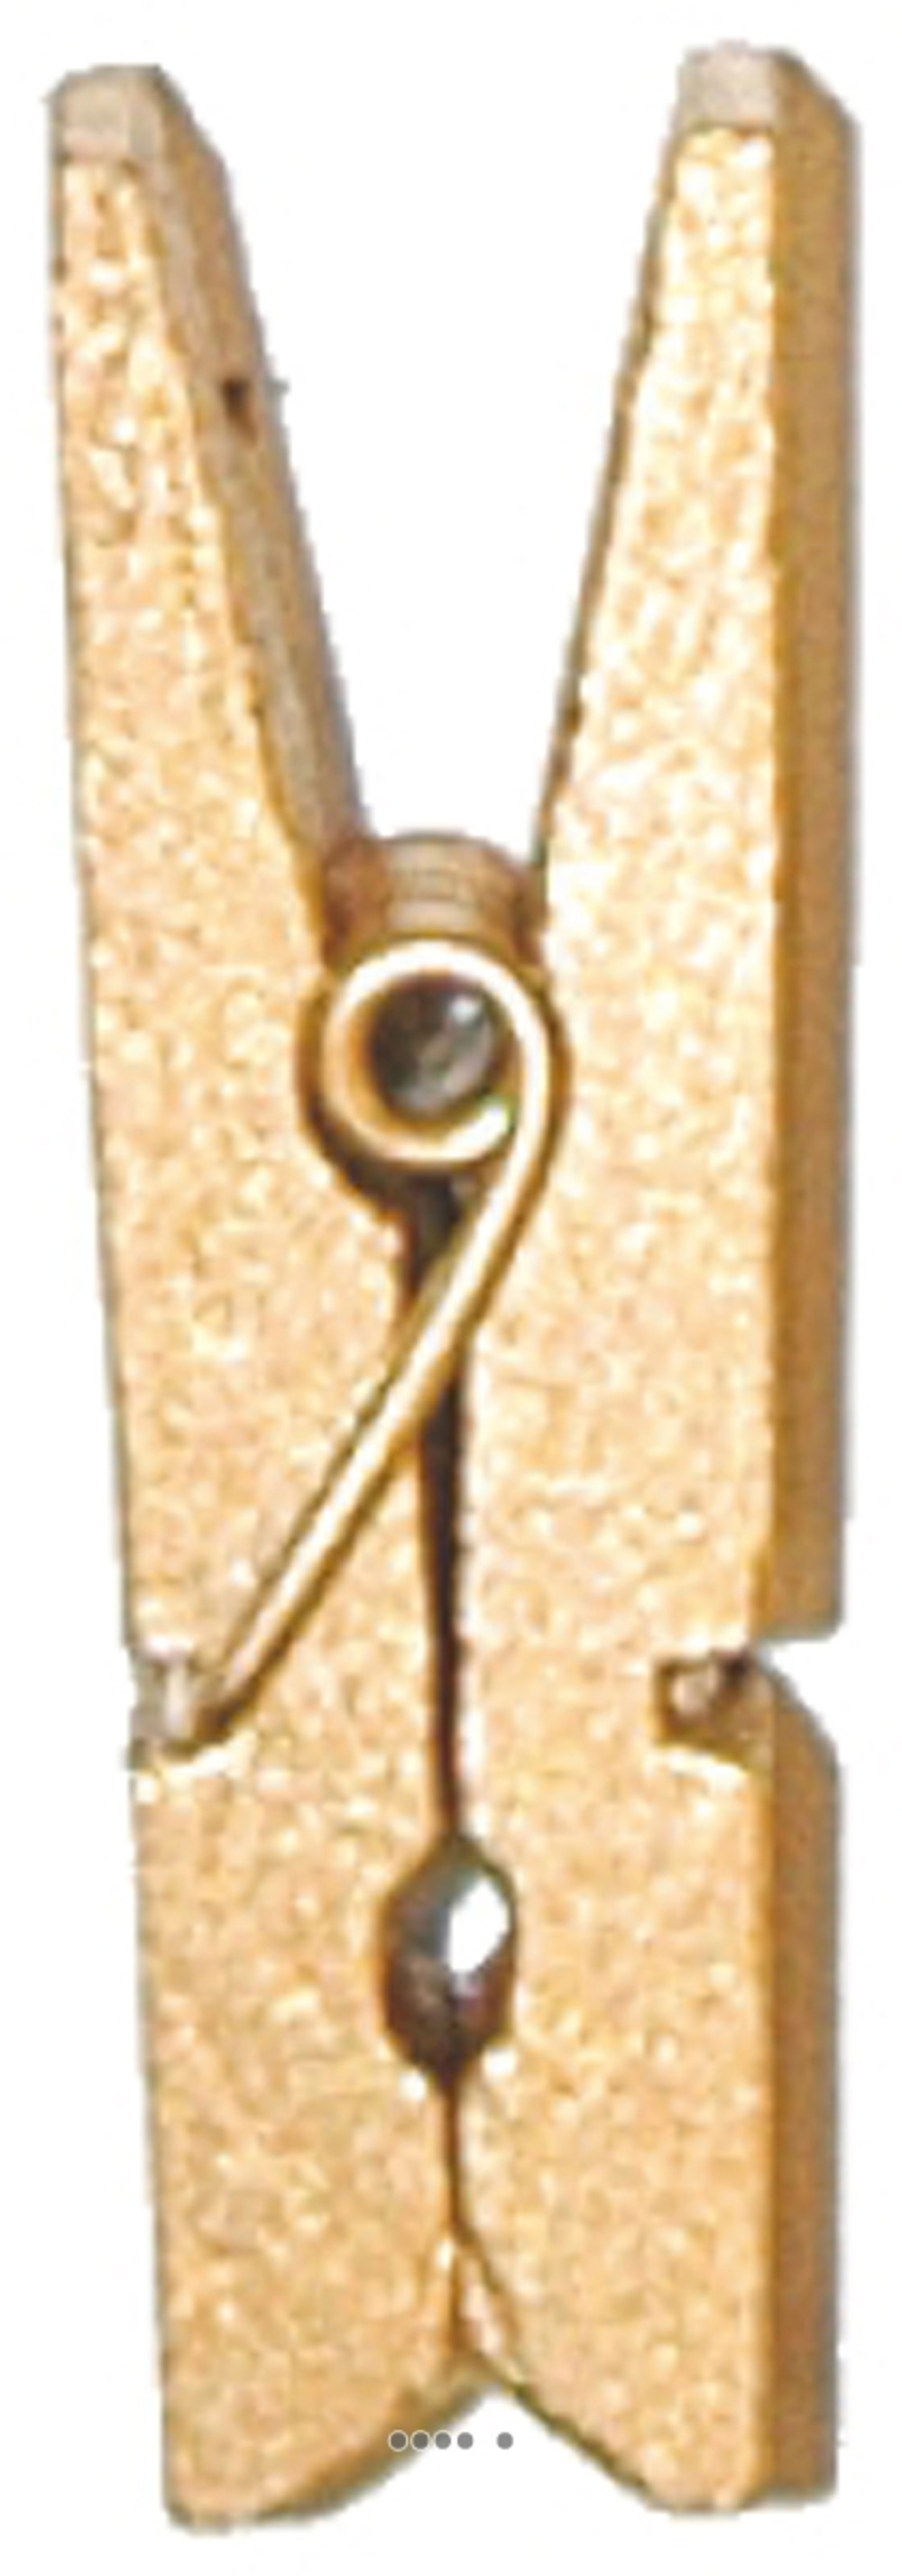 Pinces x 12 en bois or h 3 5 cm - couleur: doré